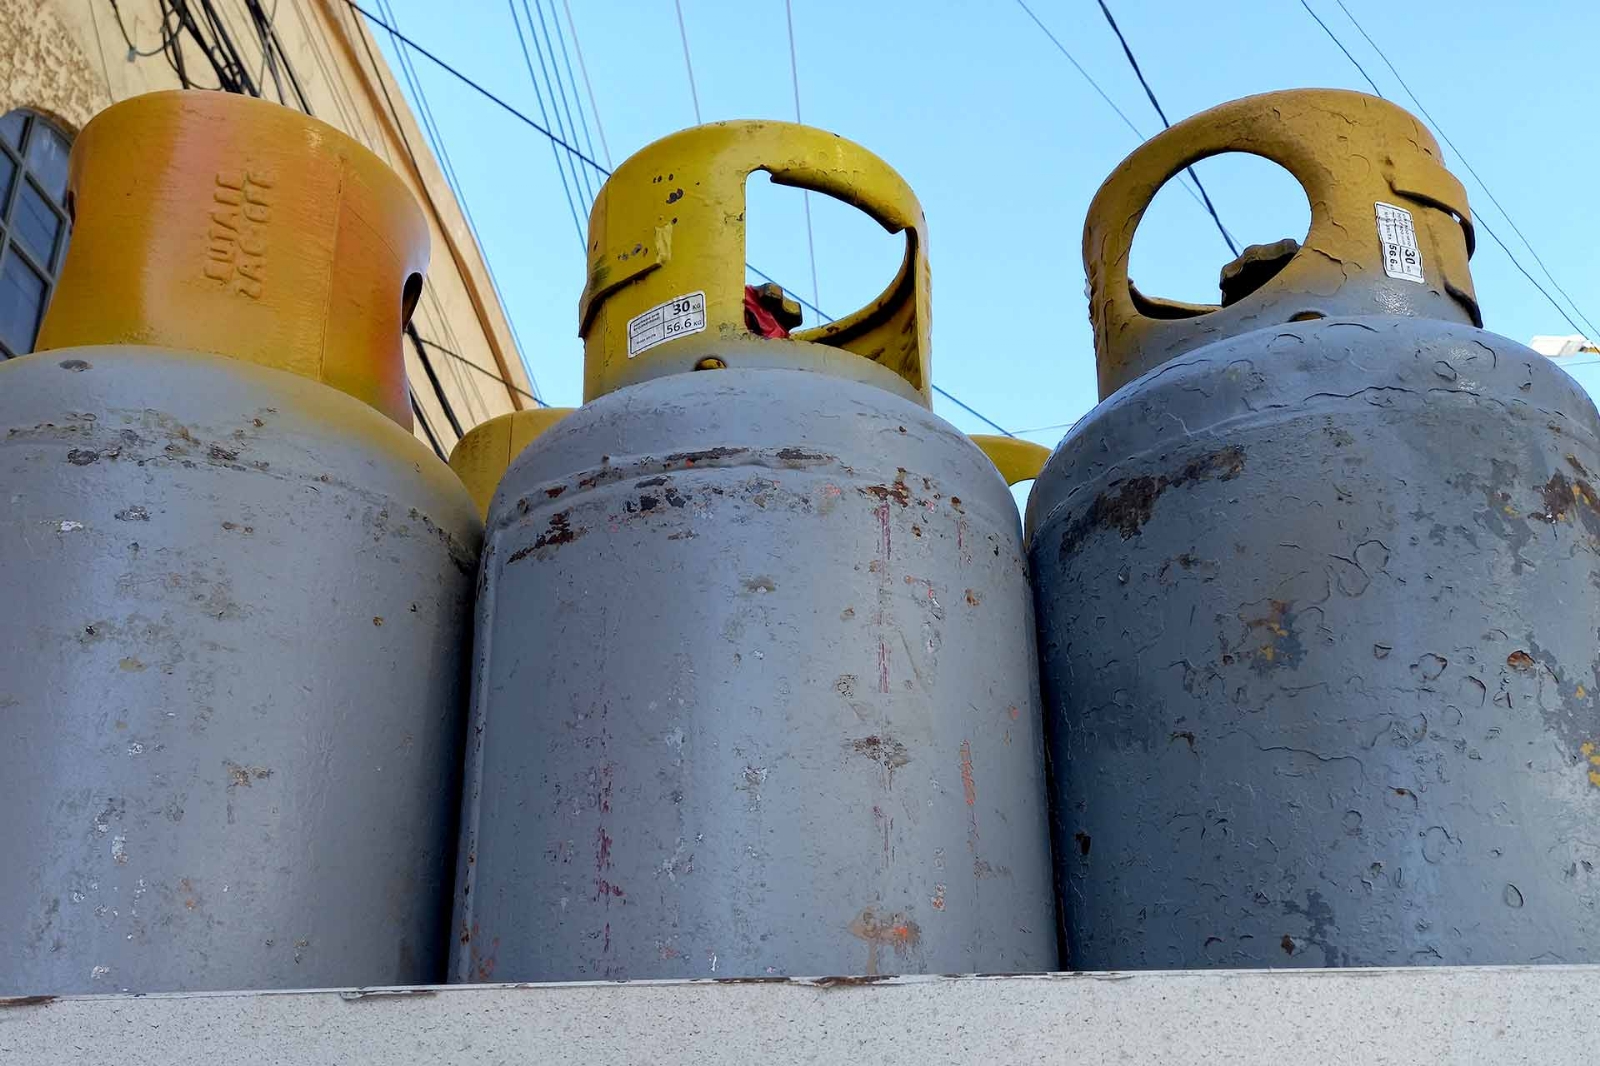 El precio del gas LP en Campeche bajará previo a finalizar el mes